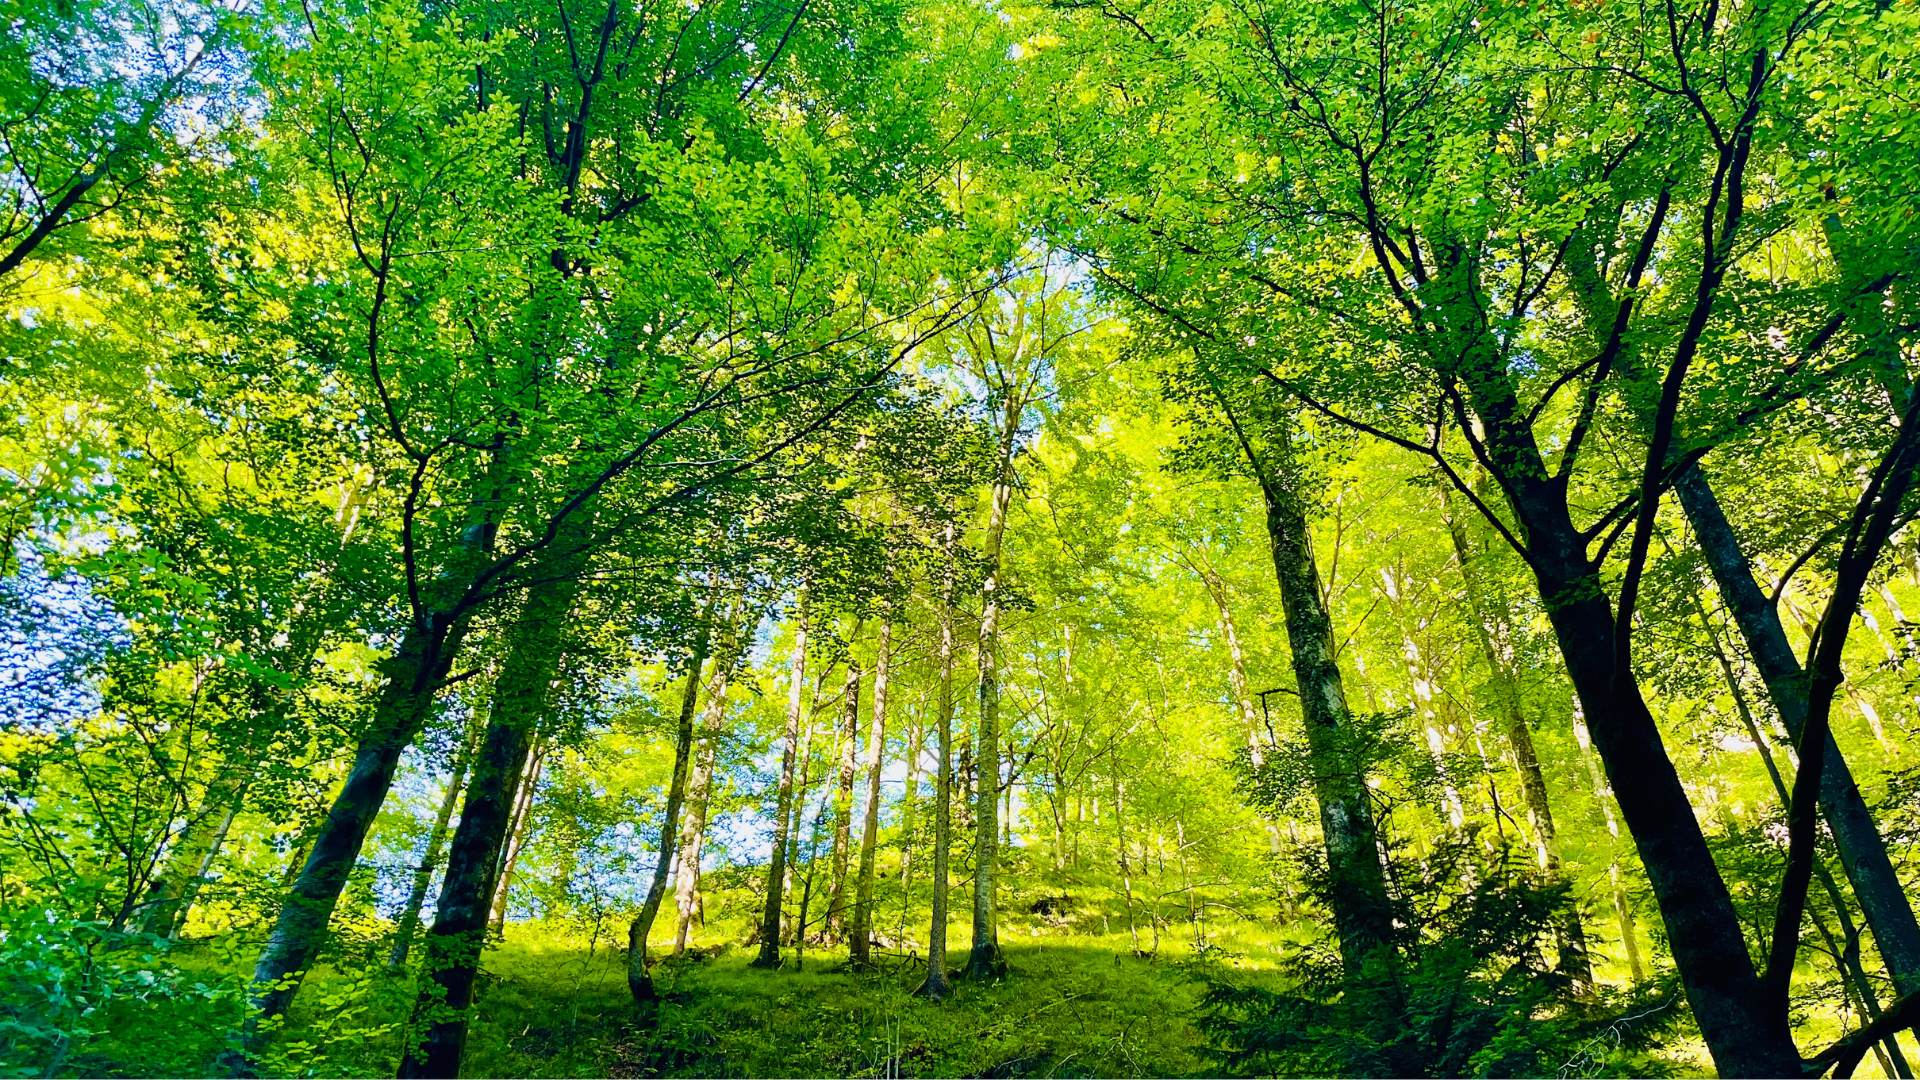 Wald mit vielen Bäumen, grünen Blättern und grünem Boden. Durchzogen von Sonnenstrahlen soll es die Naturverbundenheit zu Tierlieben Spryng Produkten aus Bio Baumwolle symbolisieren und die Liebe zur Natur zeigen!